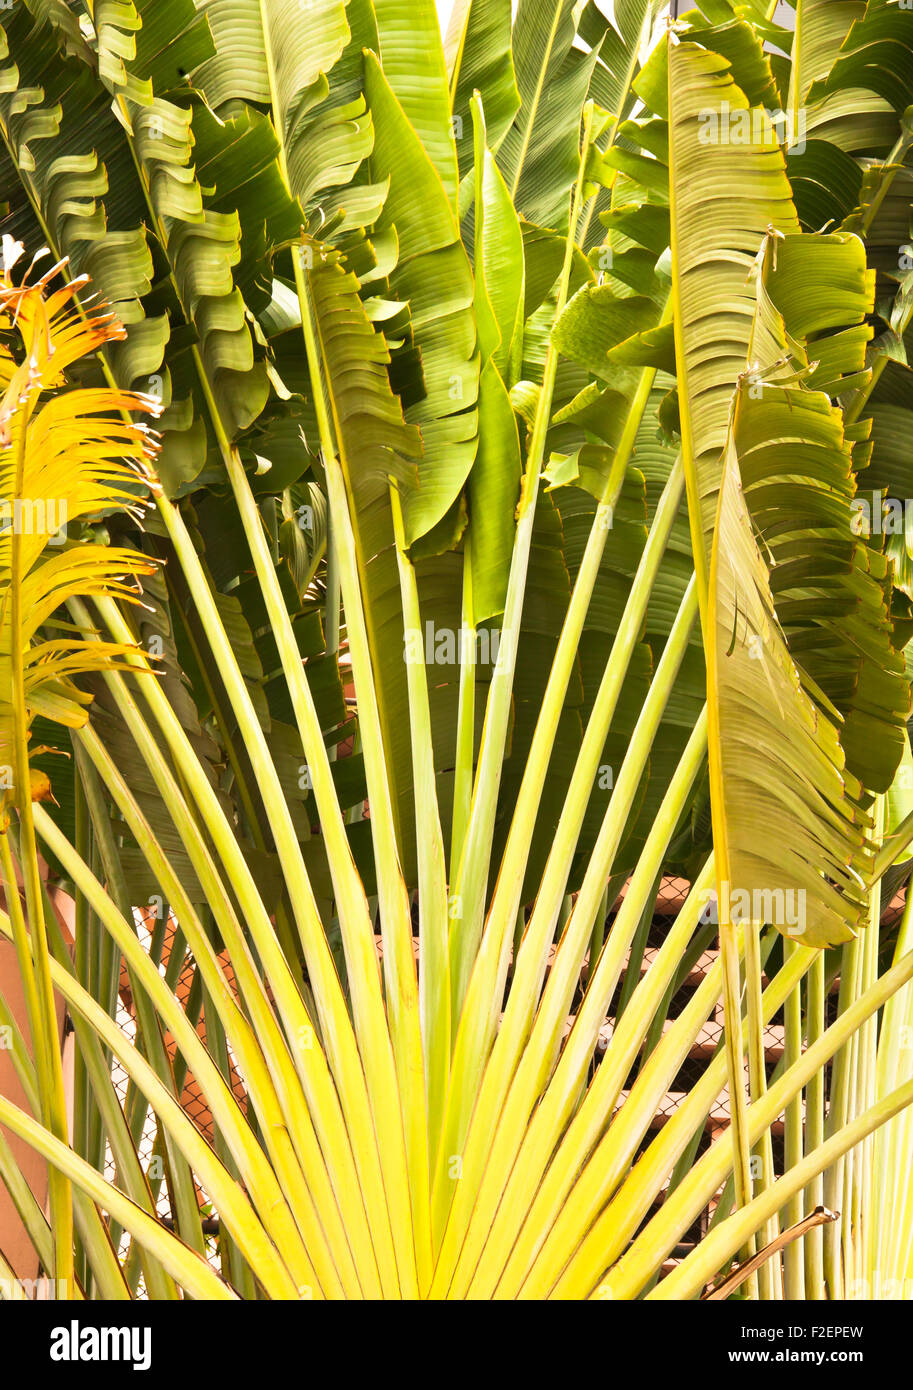 The banana stem. Arranged like a fan. Stock Photo